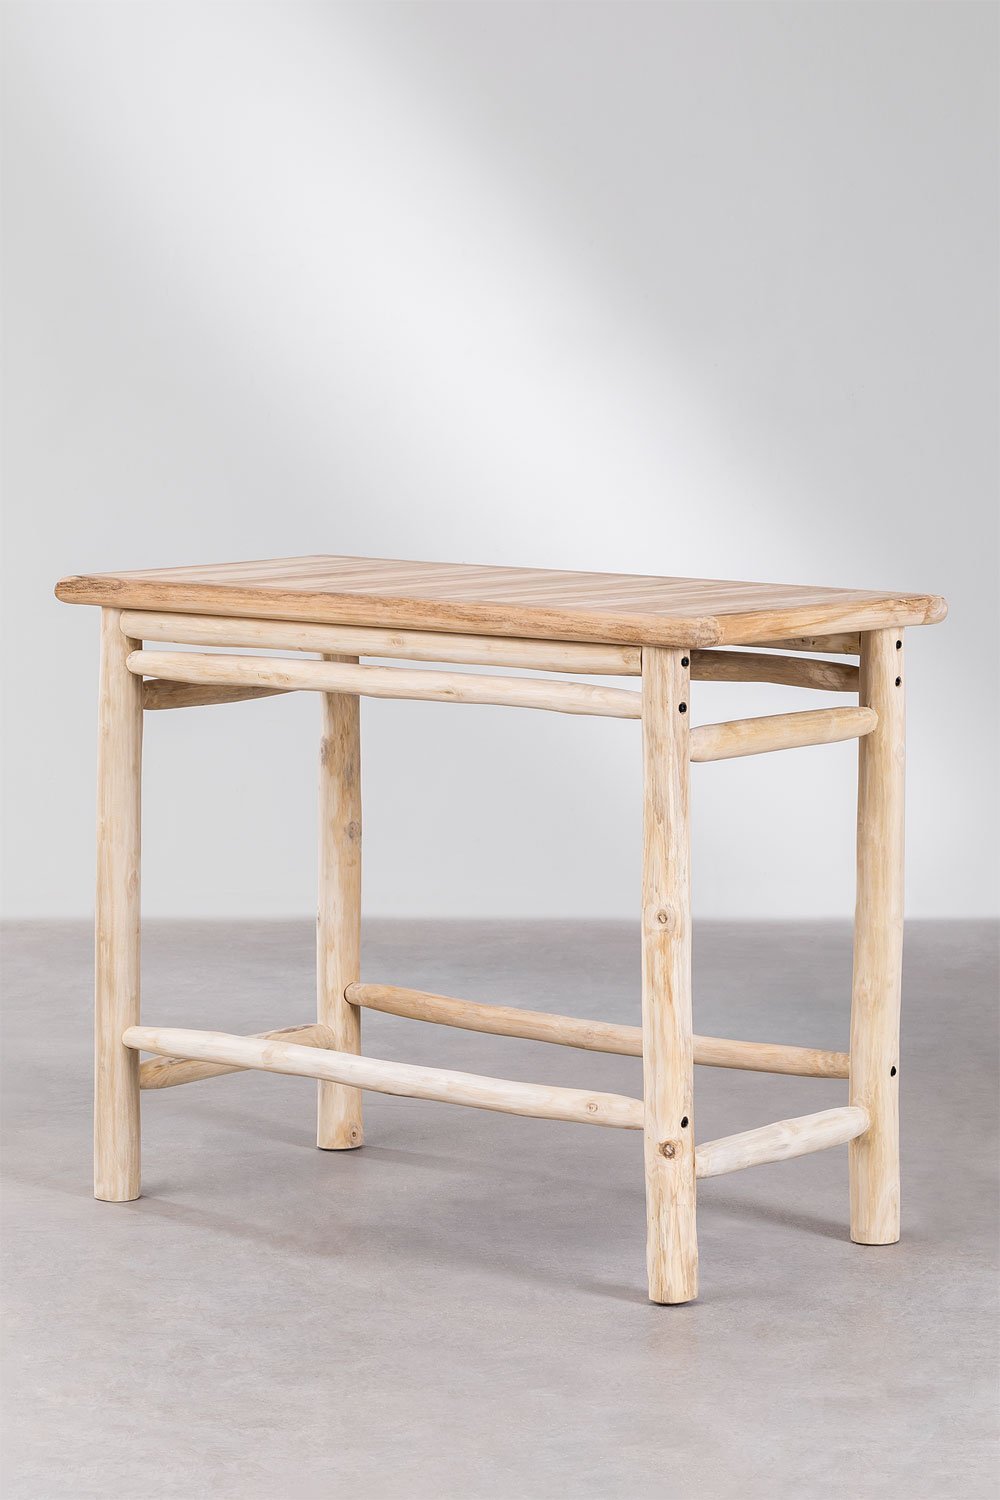 Prostokątny wysoki stół z drewna tekowego (134x65 cm) Narel, obrazek w galerii 1